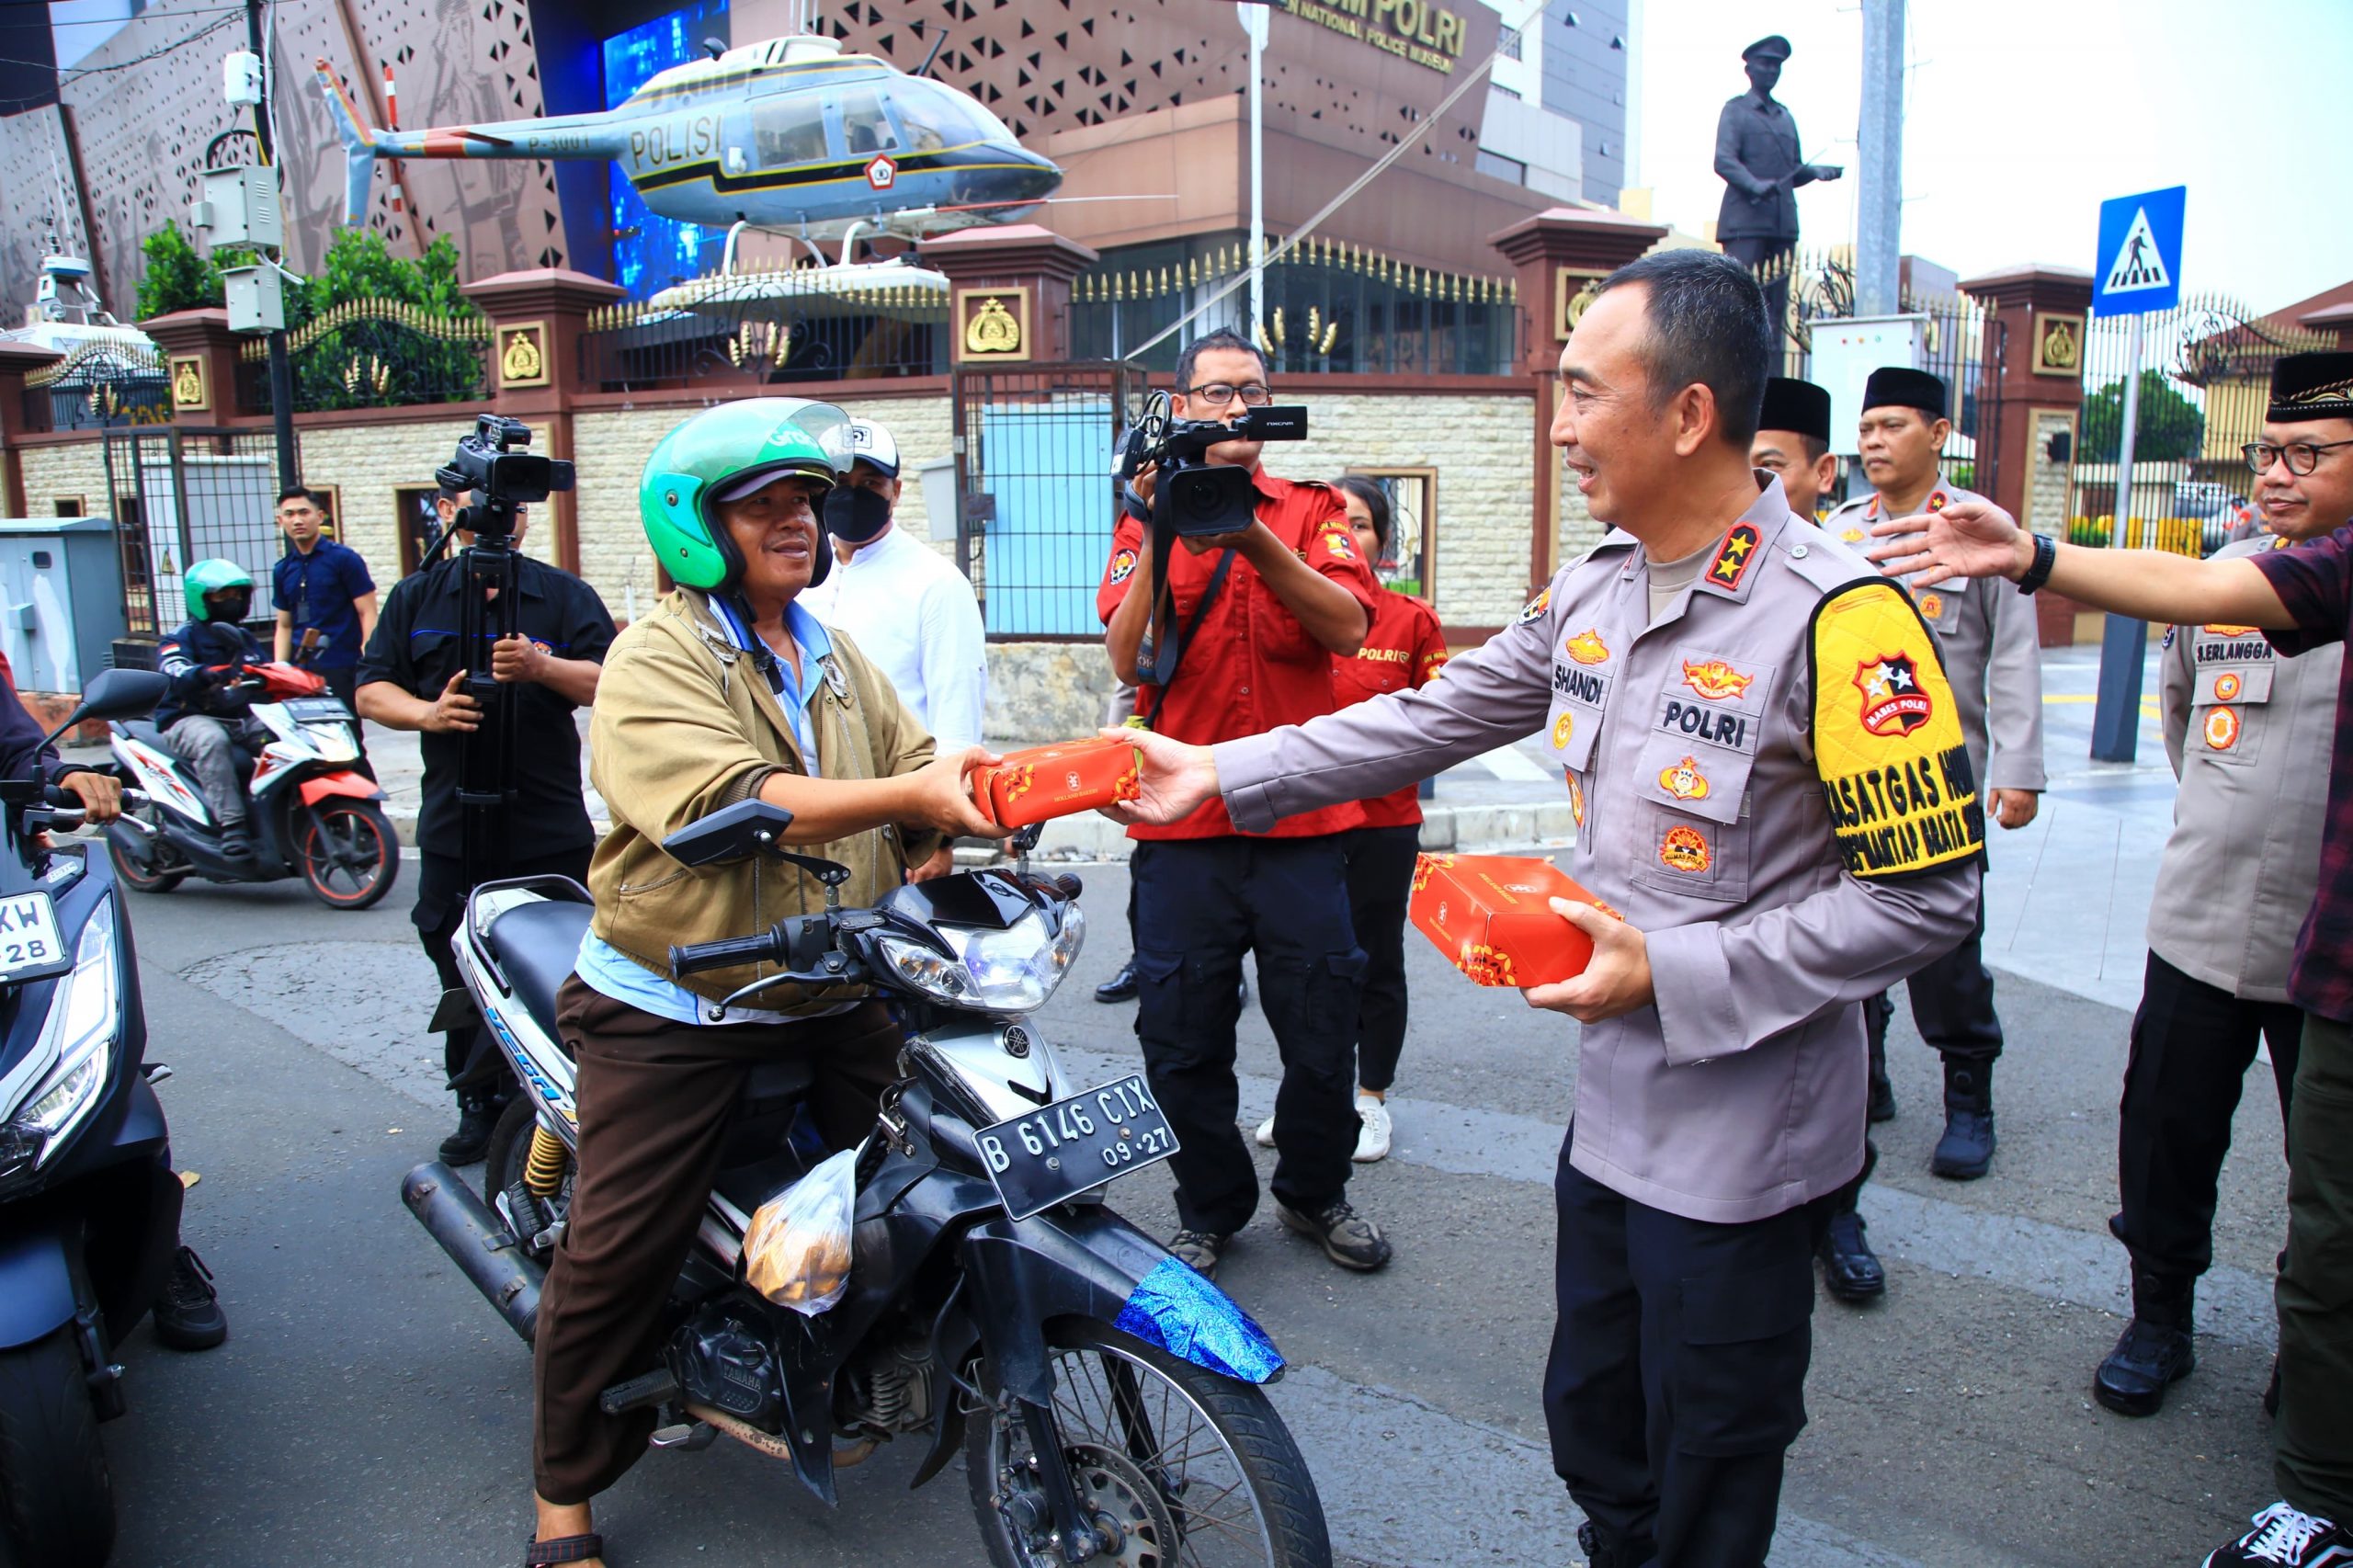 Jenderal Polri Kompak Bareng Polwan dan Wartawan Sebar Kebaikan di Bulan Ramadan